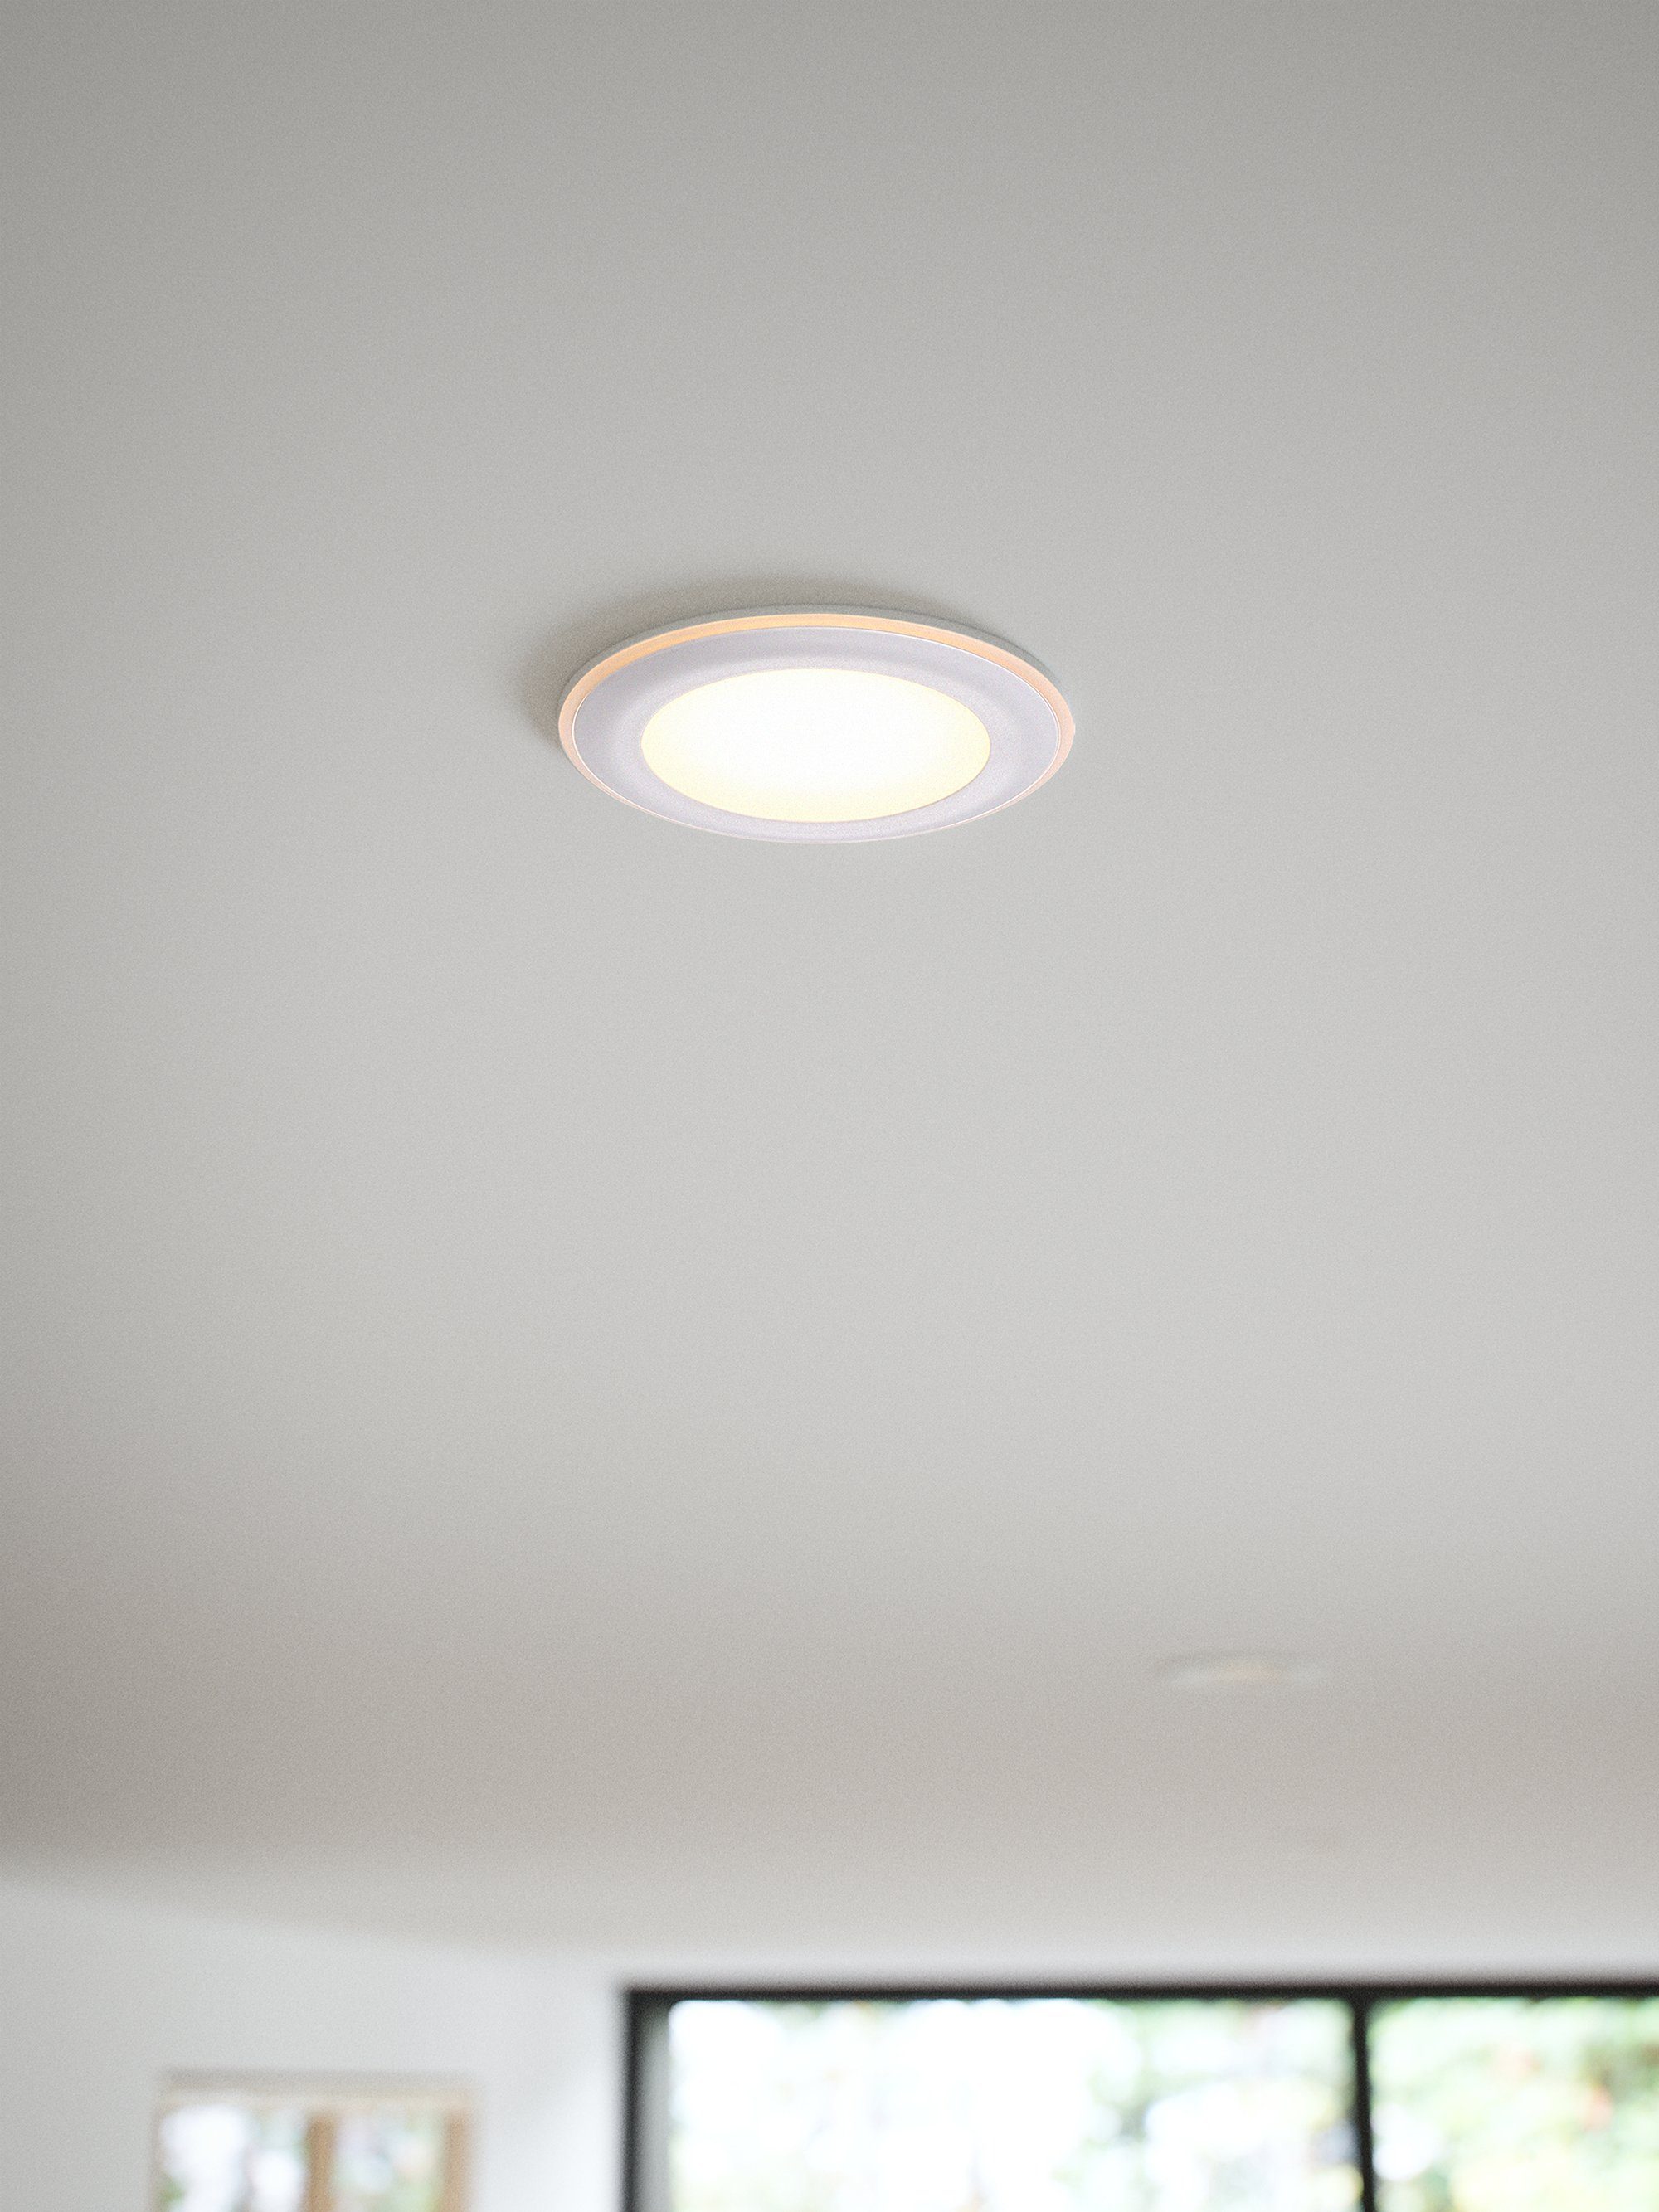 fest Warmweiß, Einbauleuchte Nordlux LED LED Dimmer Elkton, Einbaustrahler integriertem mit integriert,